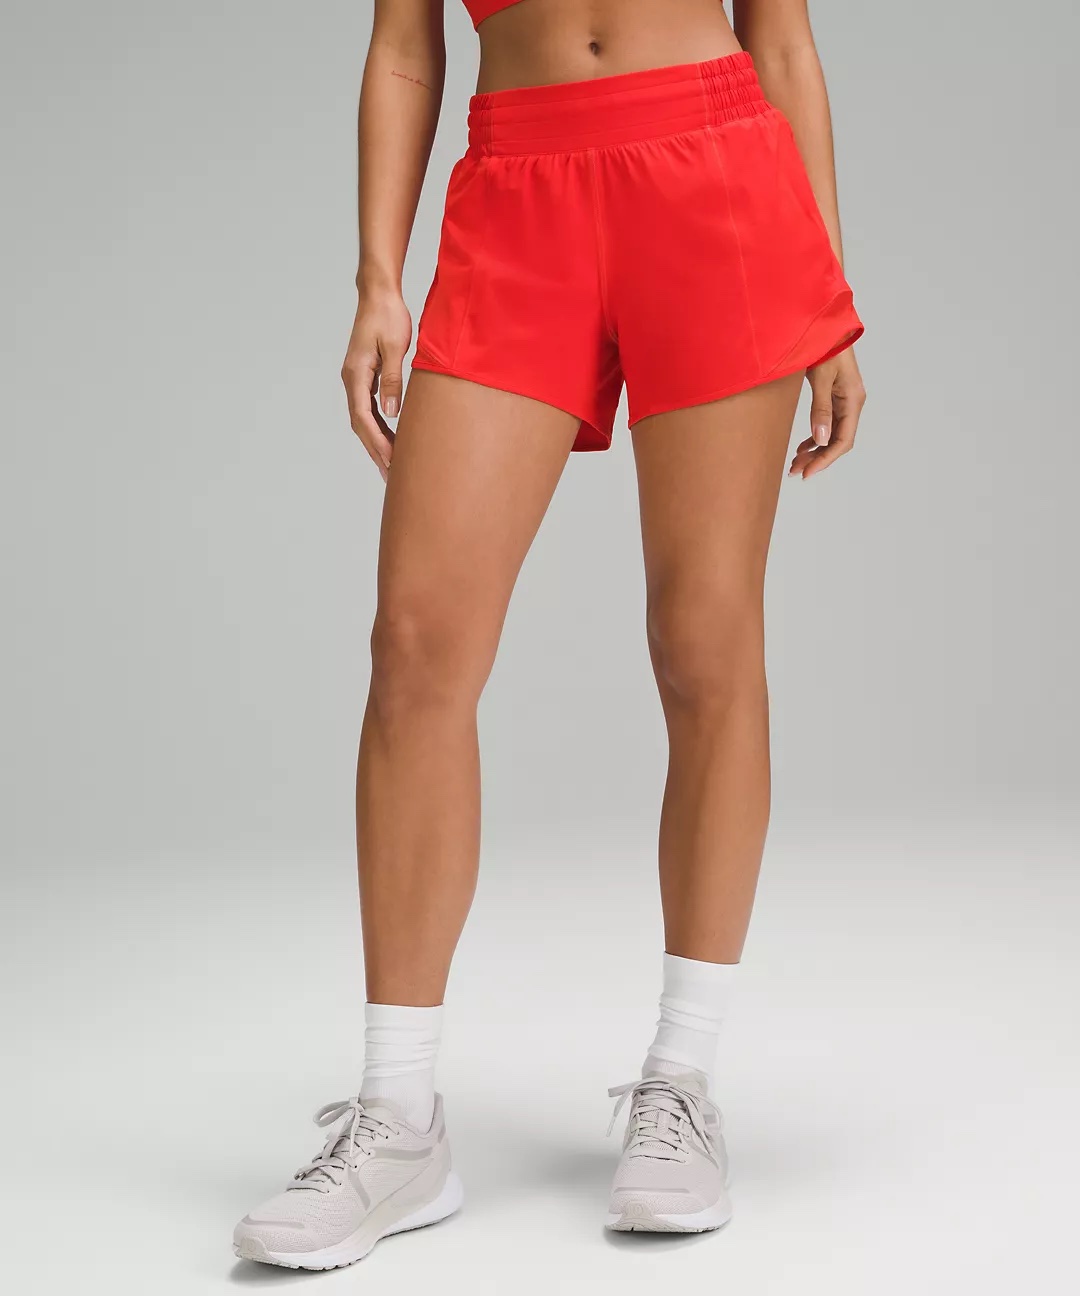 Ein Model, das leuchtend rote Shorts trägt